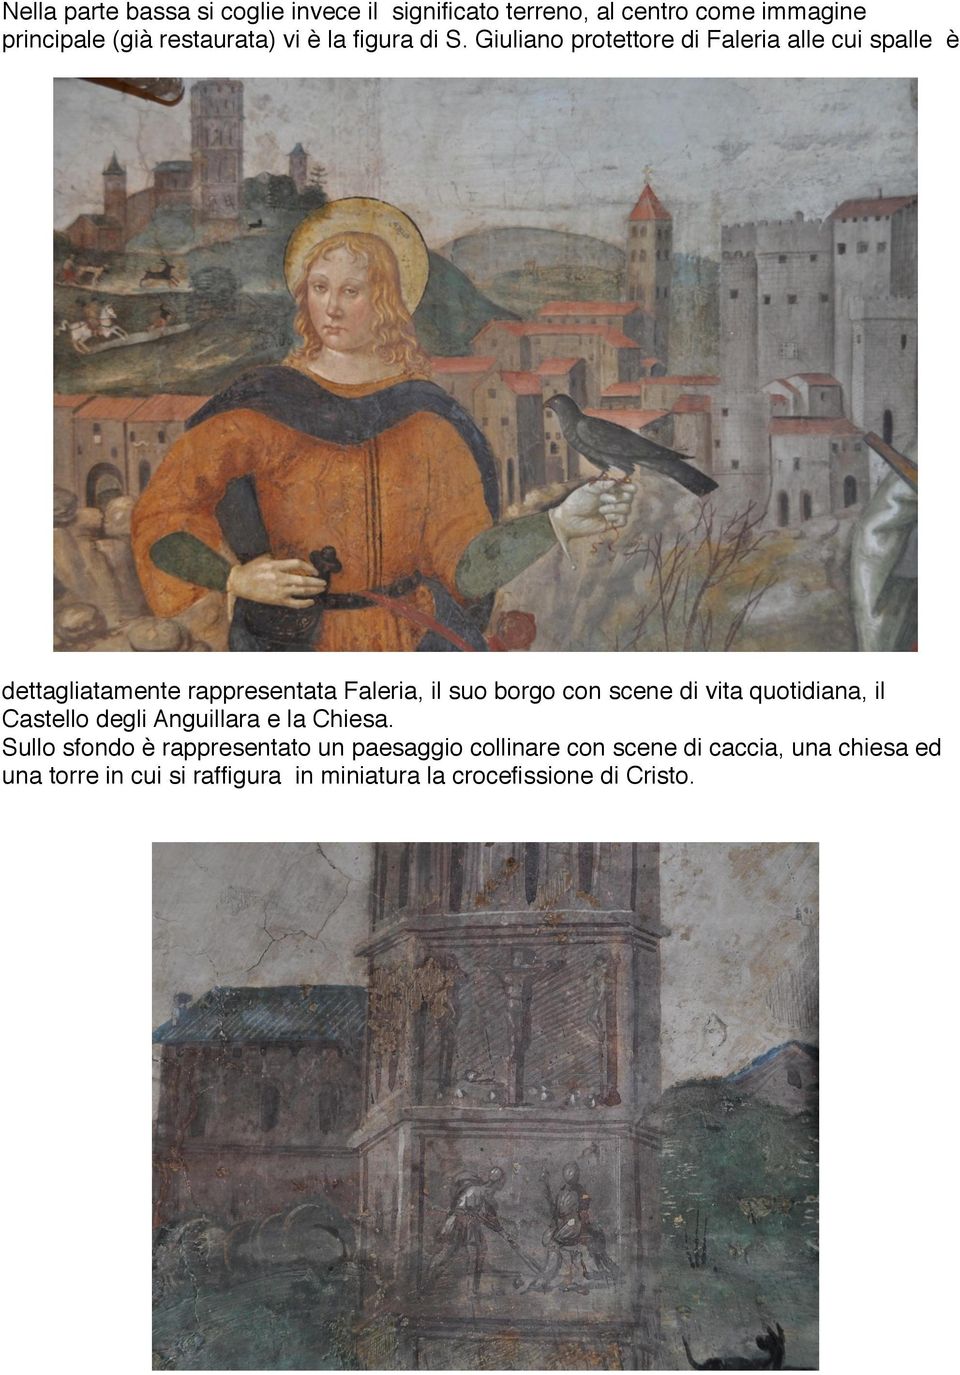 Giuliano protettore di Faleria alle cui spalle è dettagliatamente rappresentata Faleria, il suo borgo con scene di